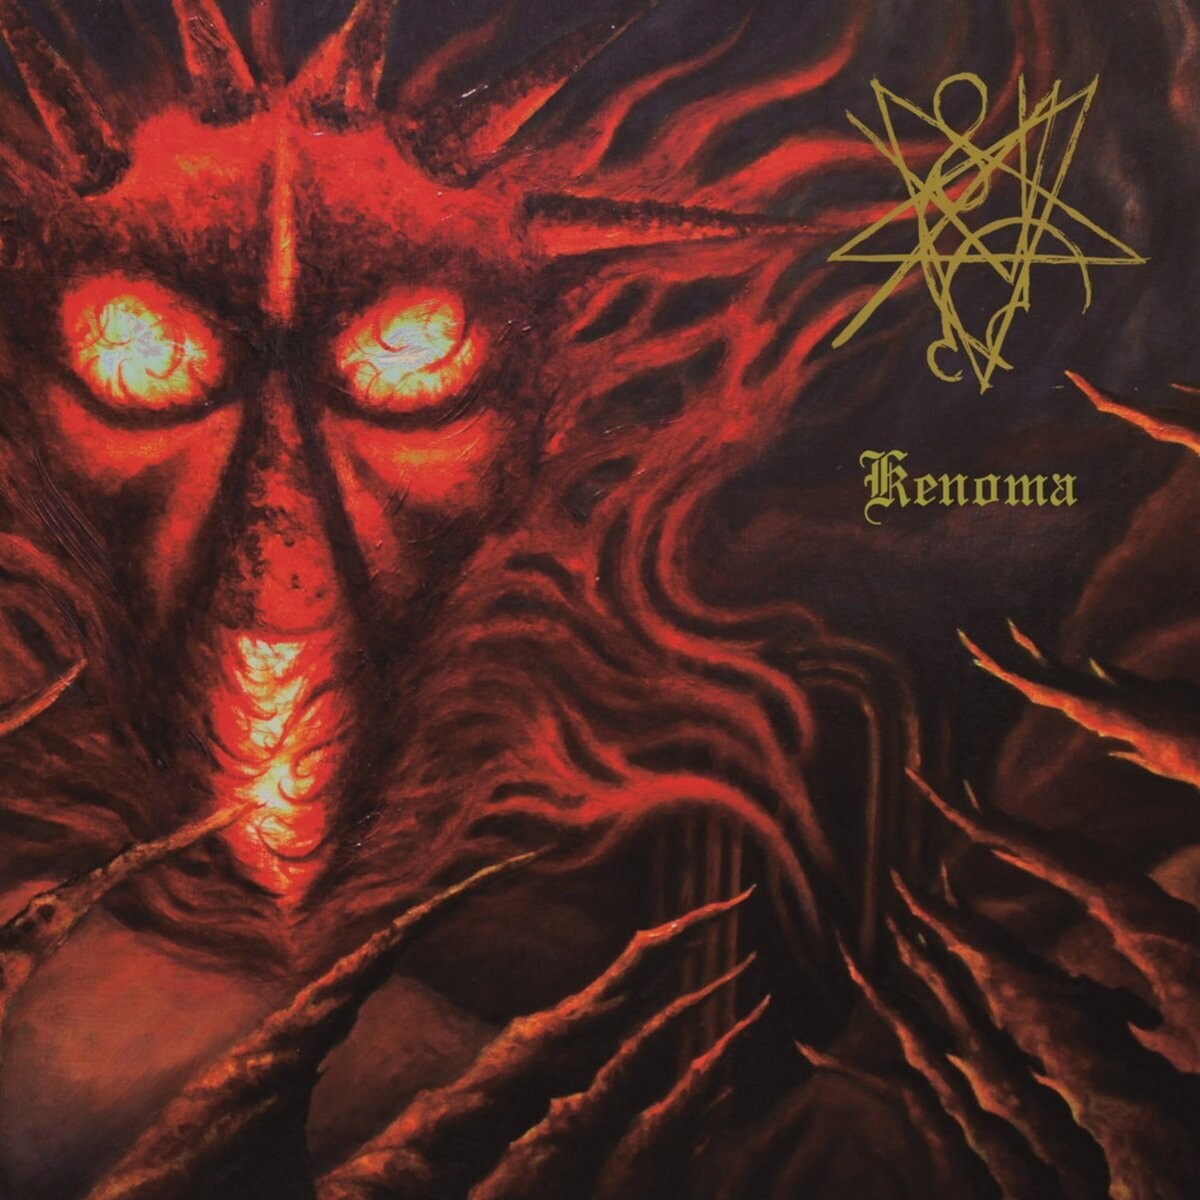 Deveneror - Kenoma | Progressive Black Metal CD